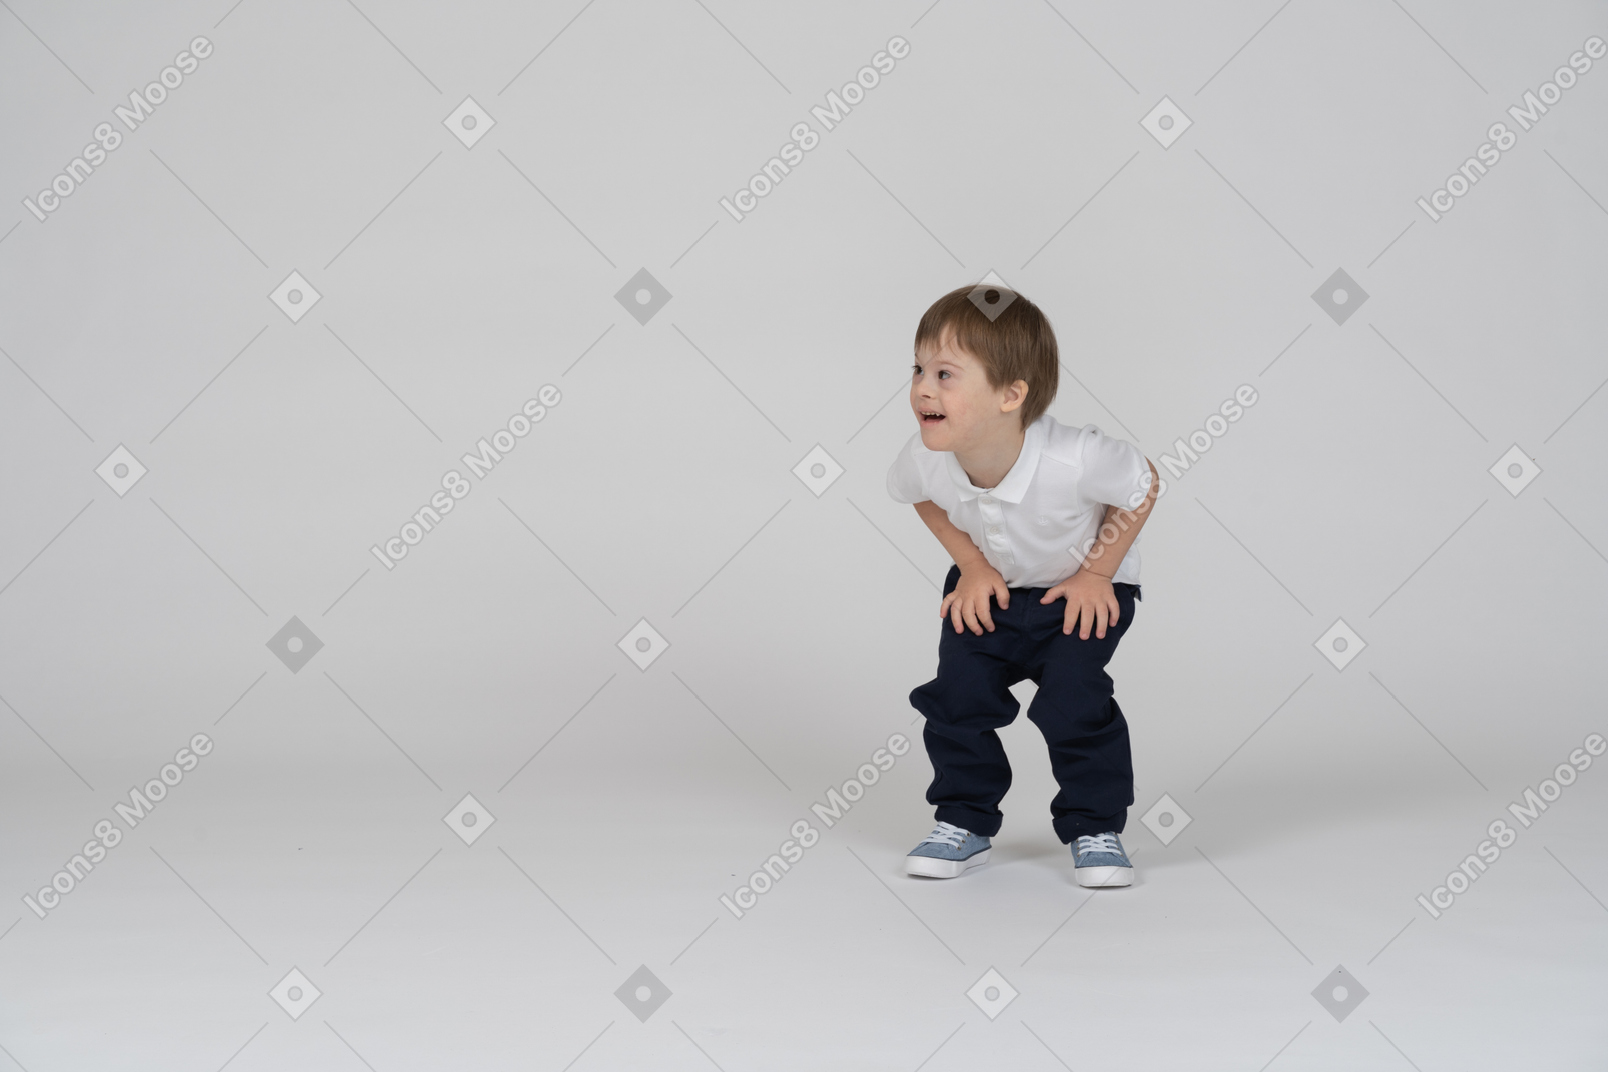 Vista frontal de un niño agachado y descansando sus manos sobre sus rodillas